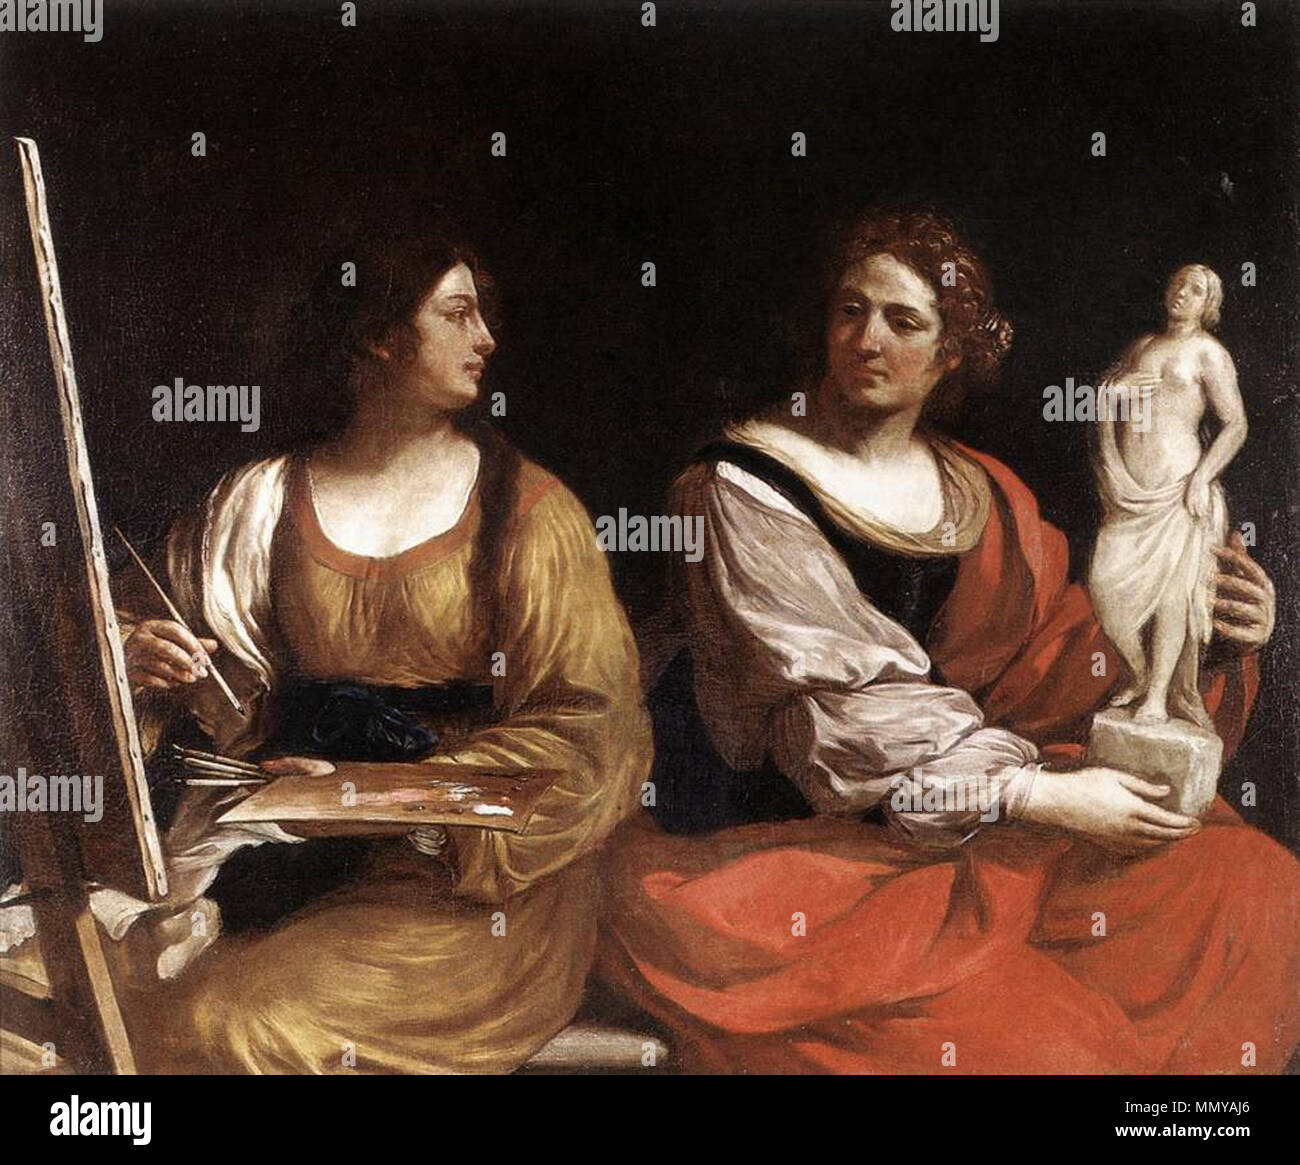 Allegoria della pittura e della scultura. 1637. Guercino Allegoria pittura scultura Foto Stock